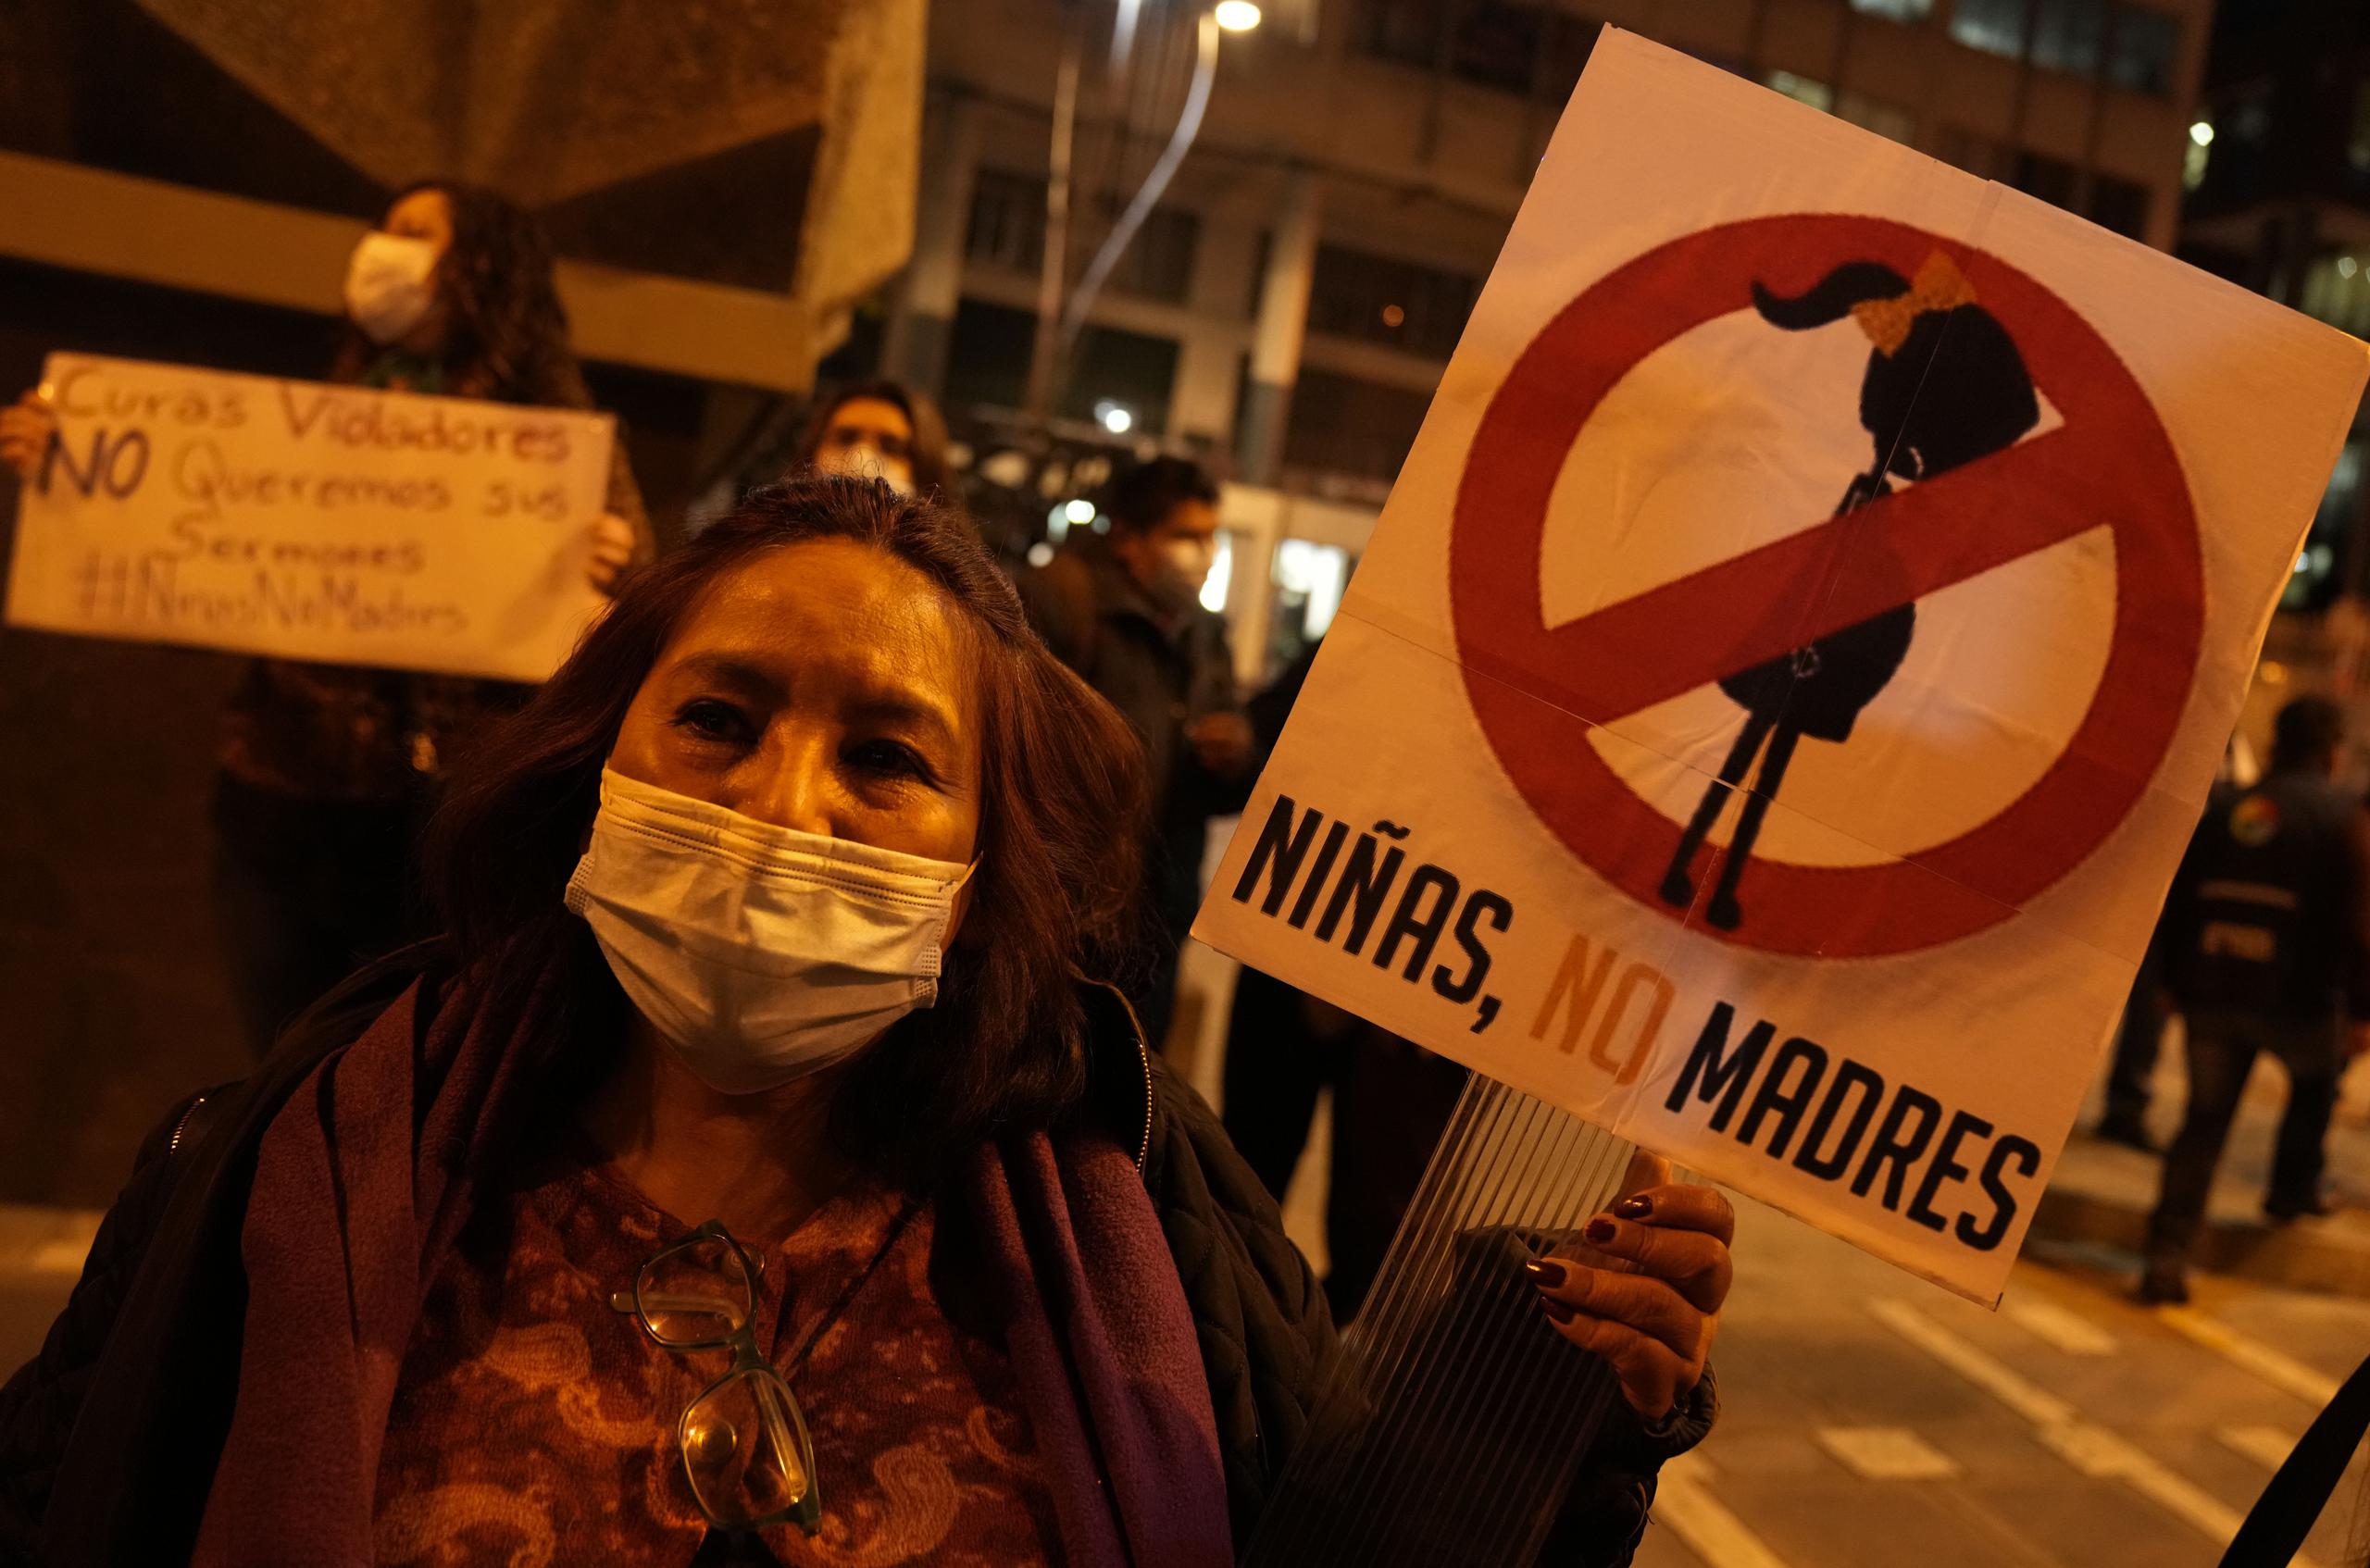 Un grupo de activistas protestan en Bolivia a favor del aborto y reclamando que "las niñas no deben ser obligadas a ser madres".